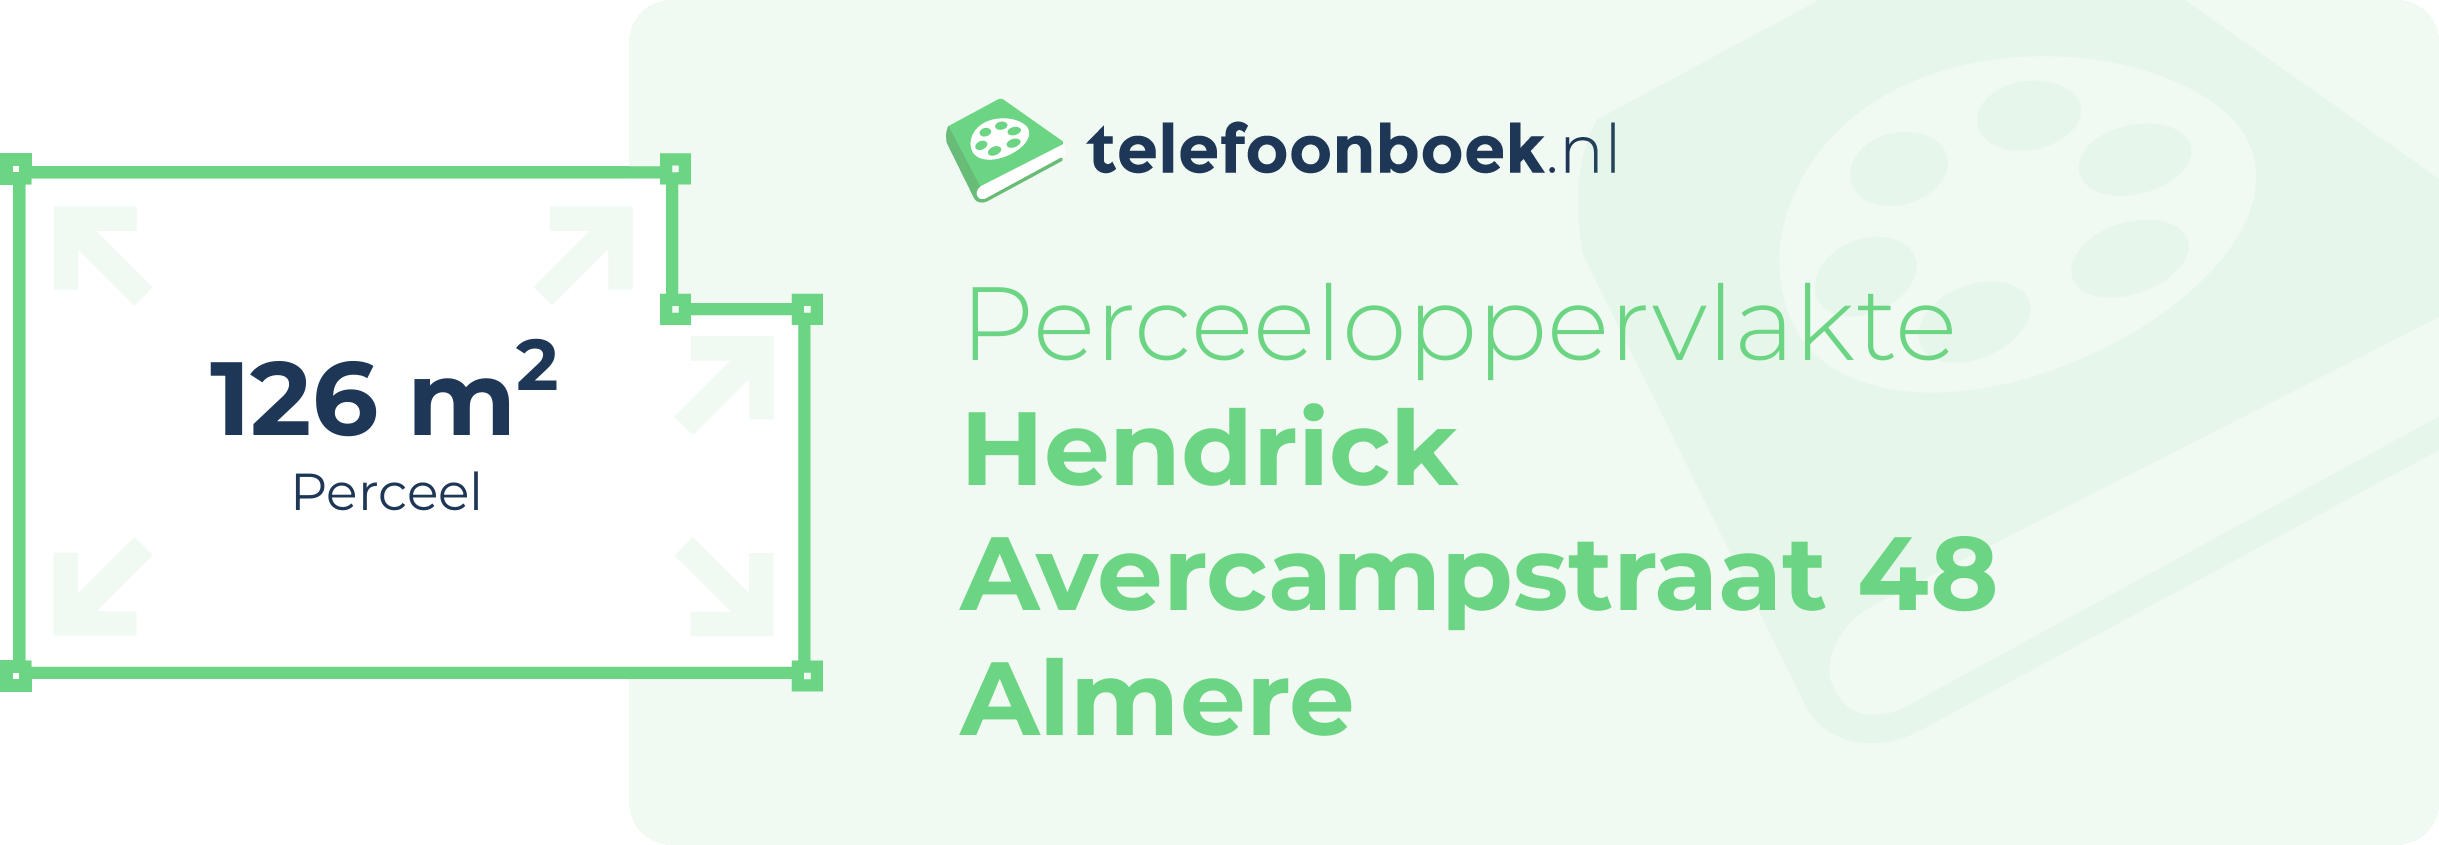 Perceeloppervlakte Hendrick Avercampstraat 48 Almere